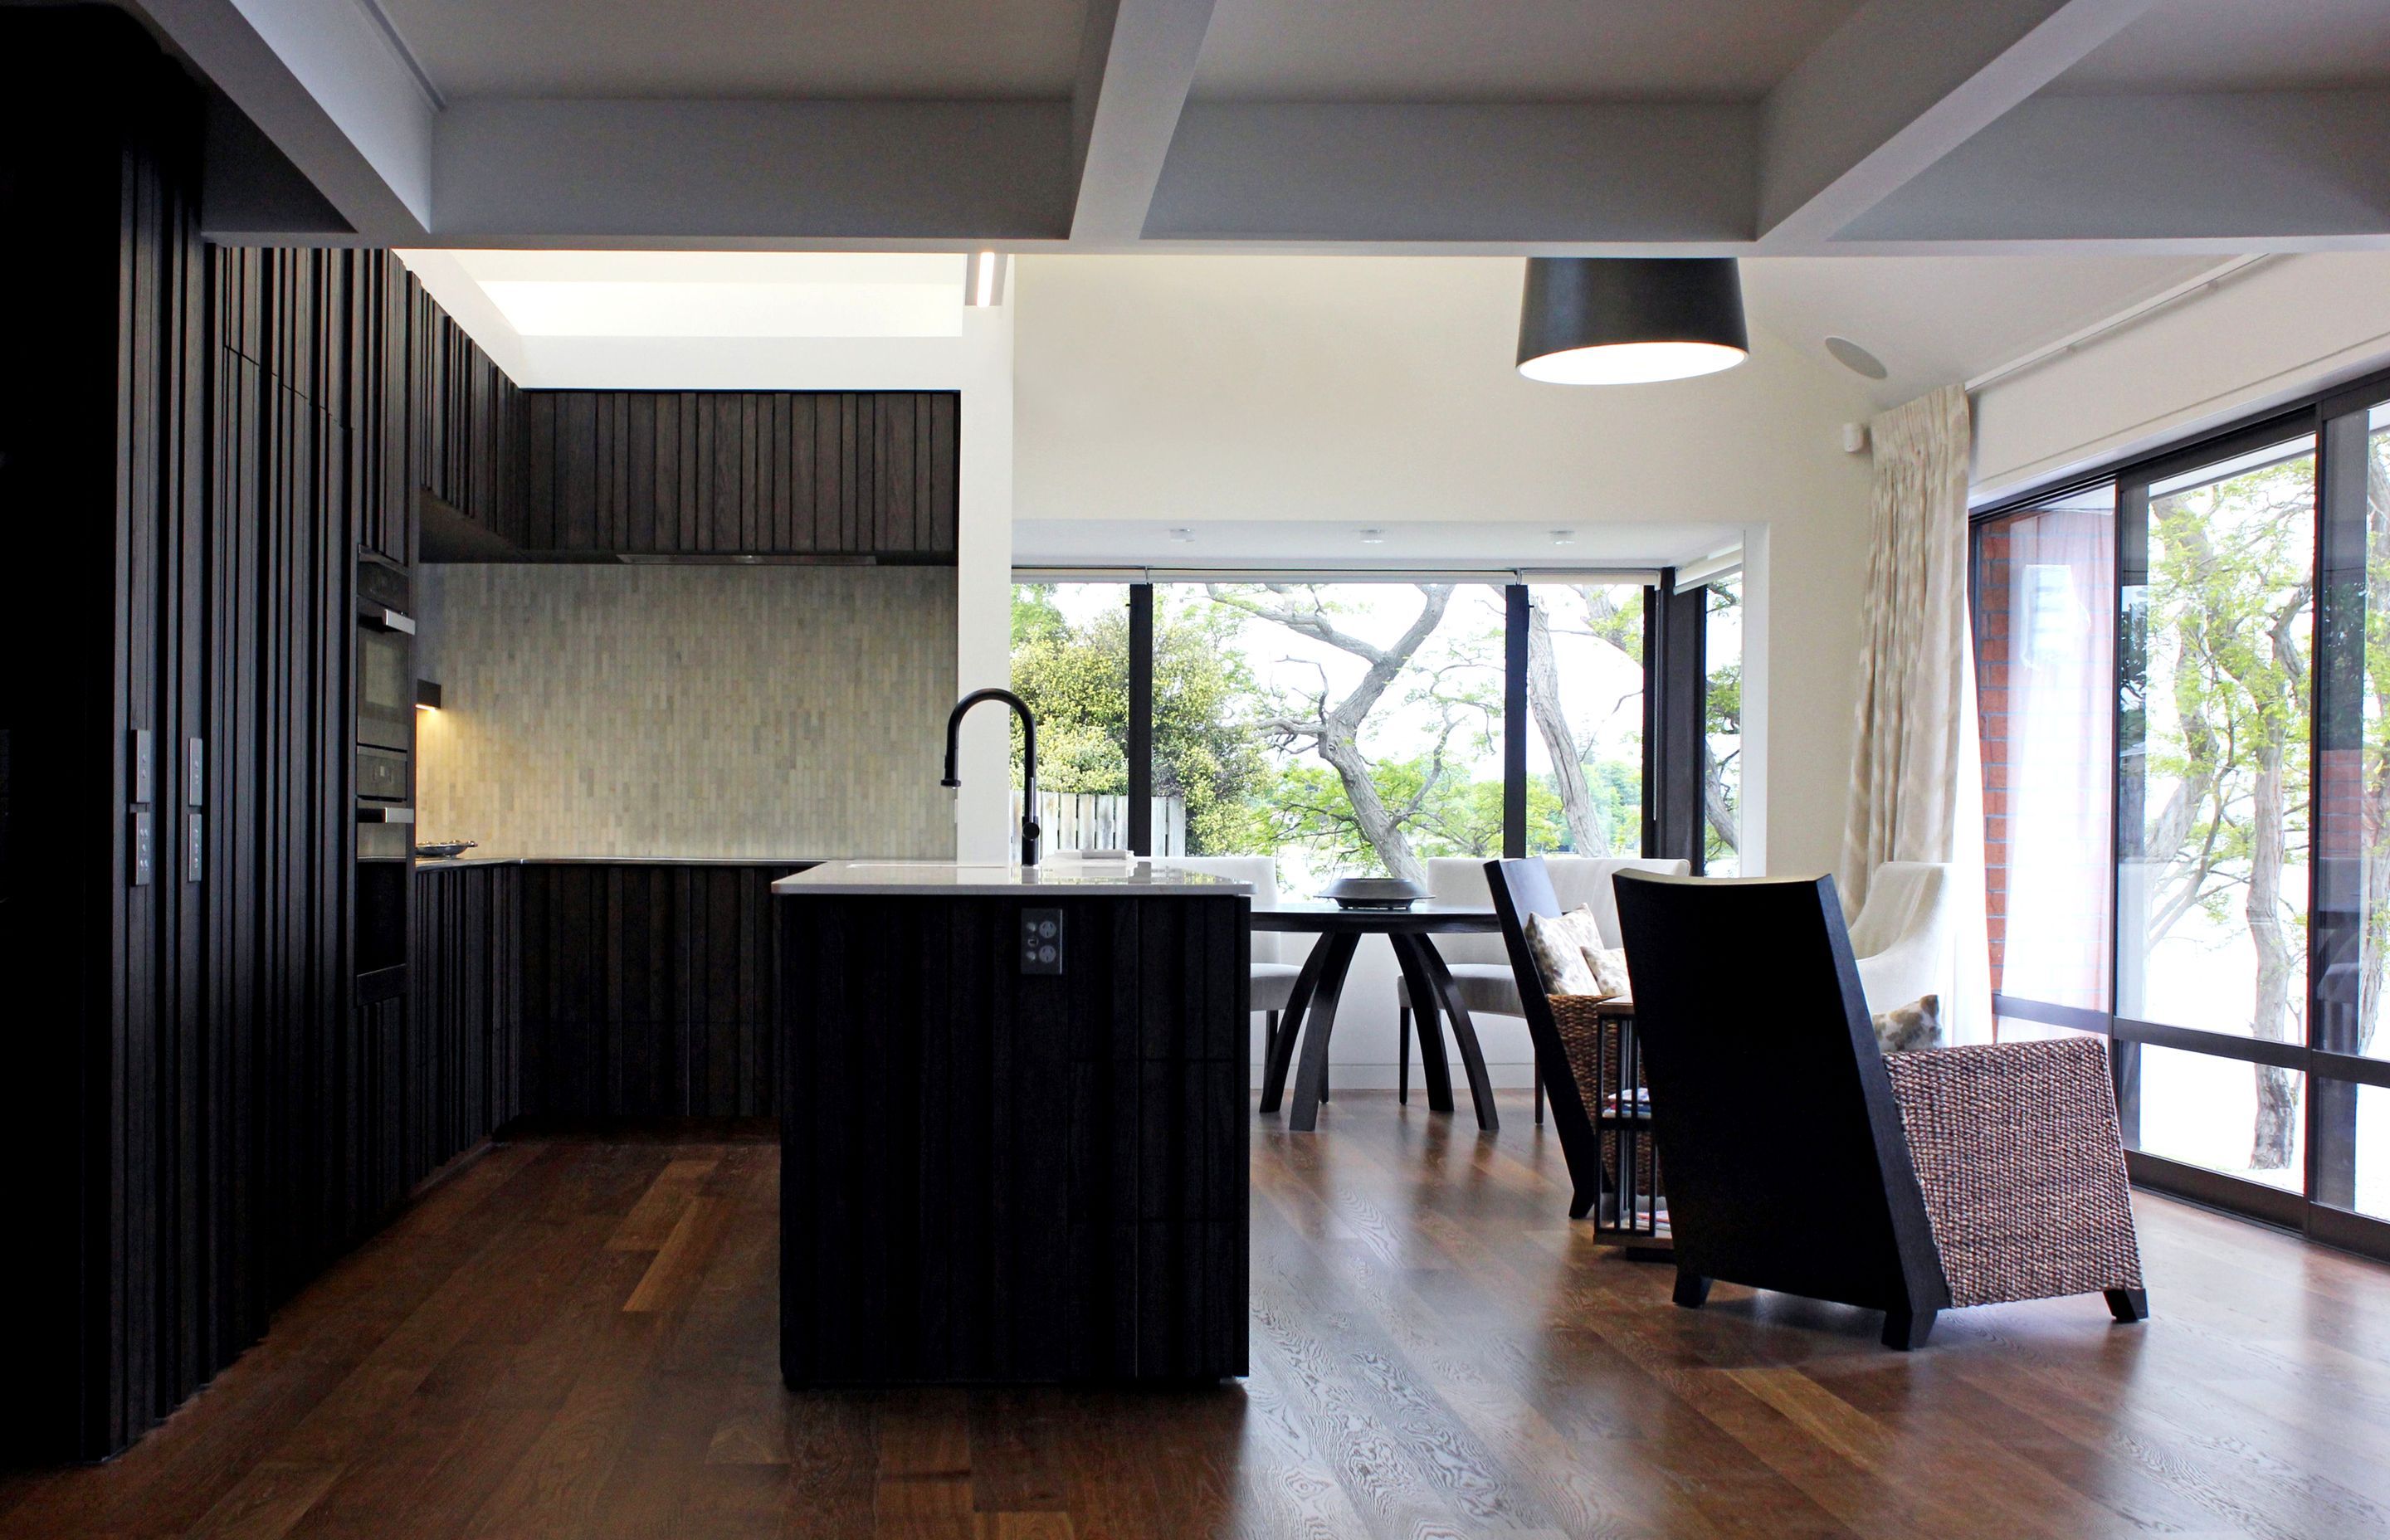 Taupo Apartment Addition & Interior Refurbishment